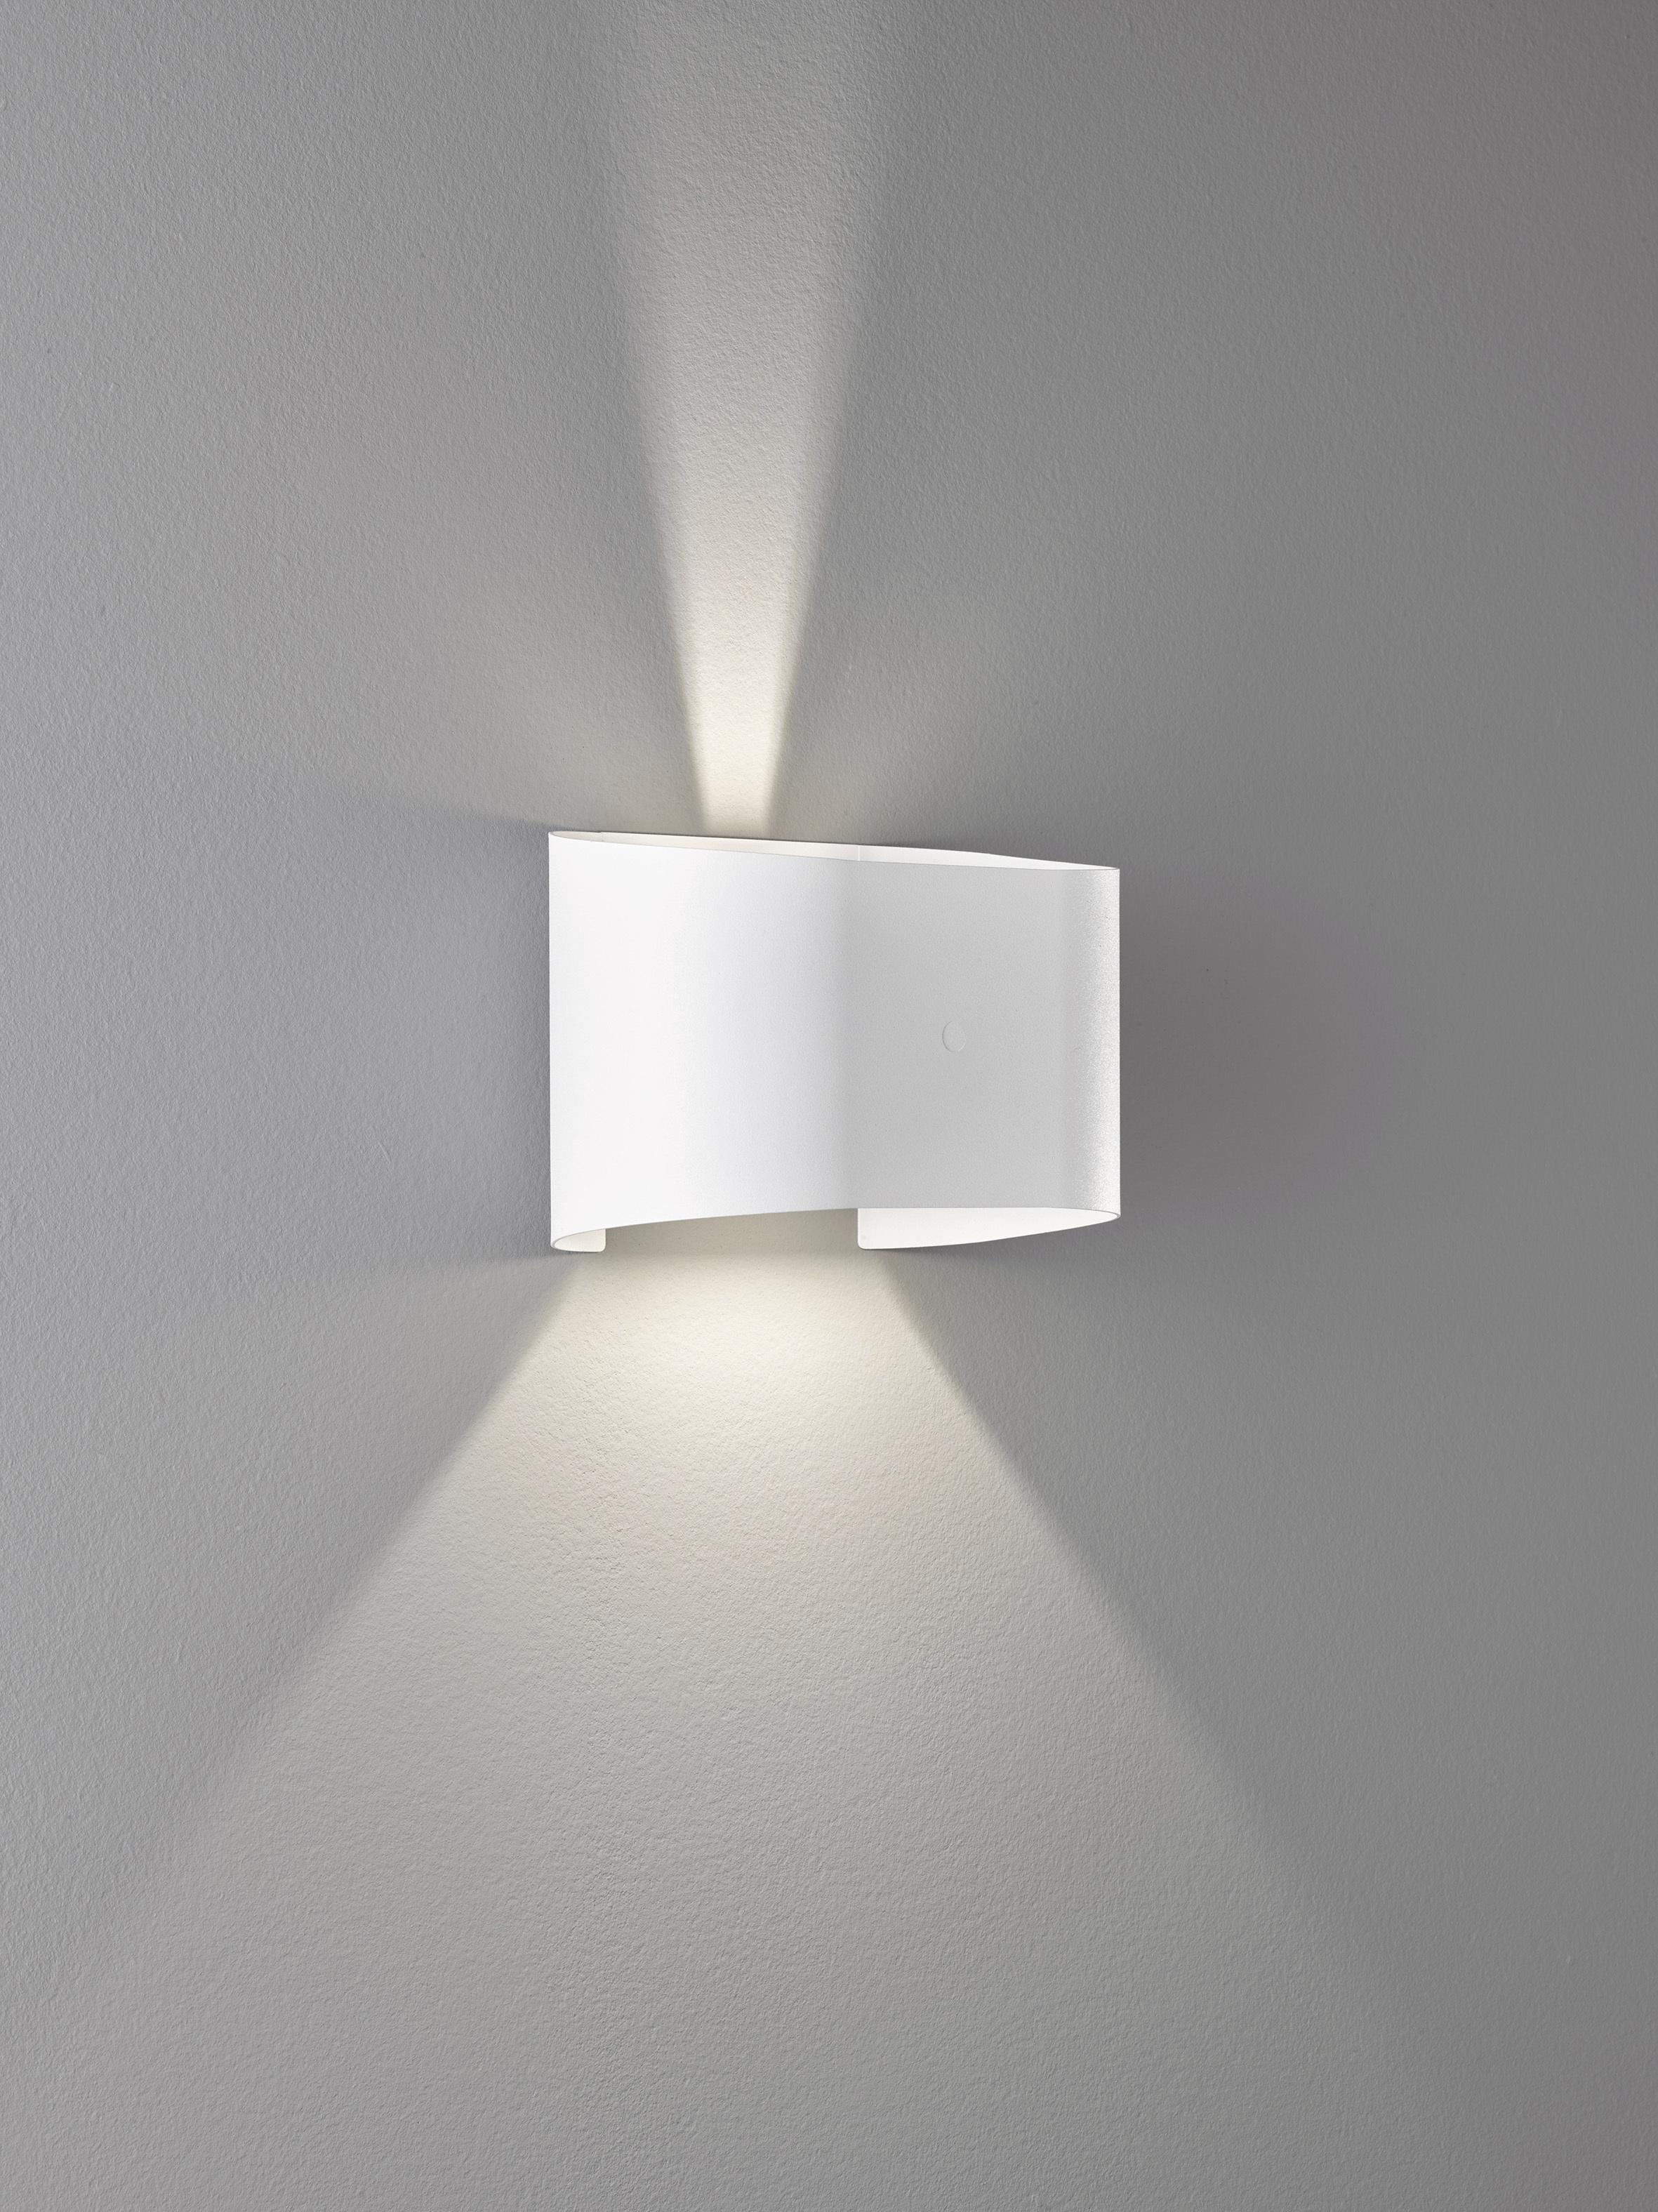 Wandbeleuchtung LED Wandlampe Chrom & Kristalleffekt 22 x 11,5cm Wohnraumleuchte 